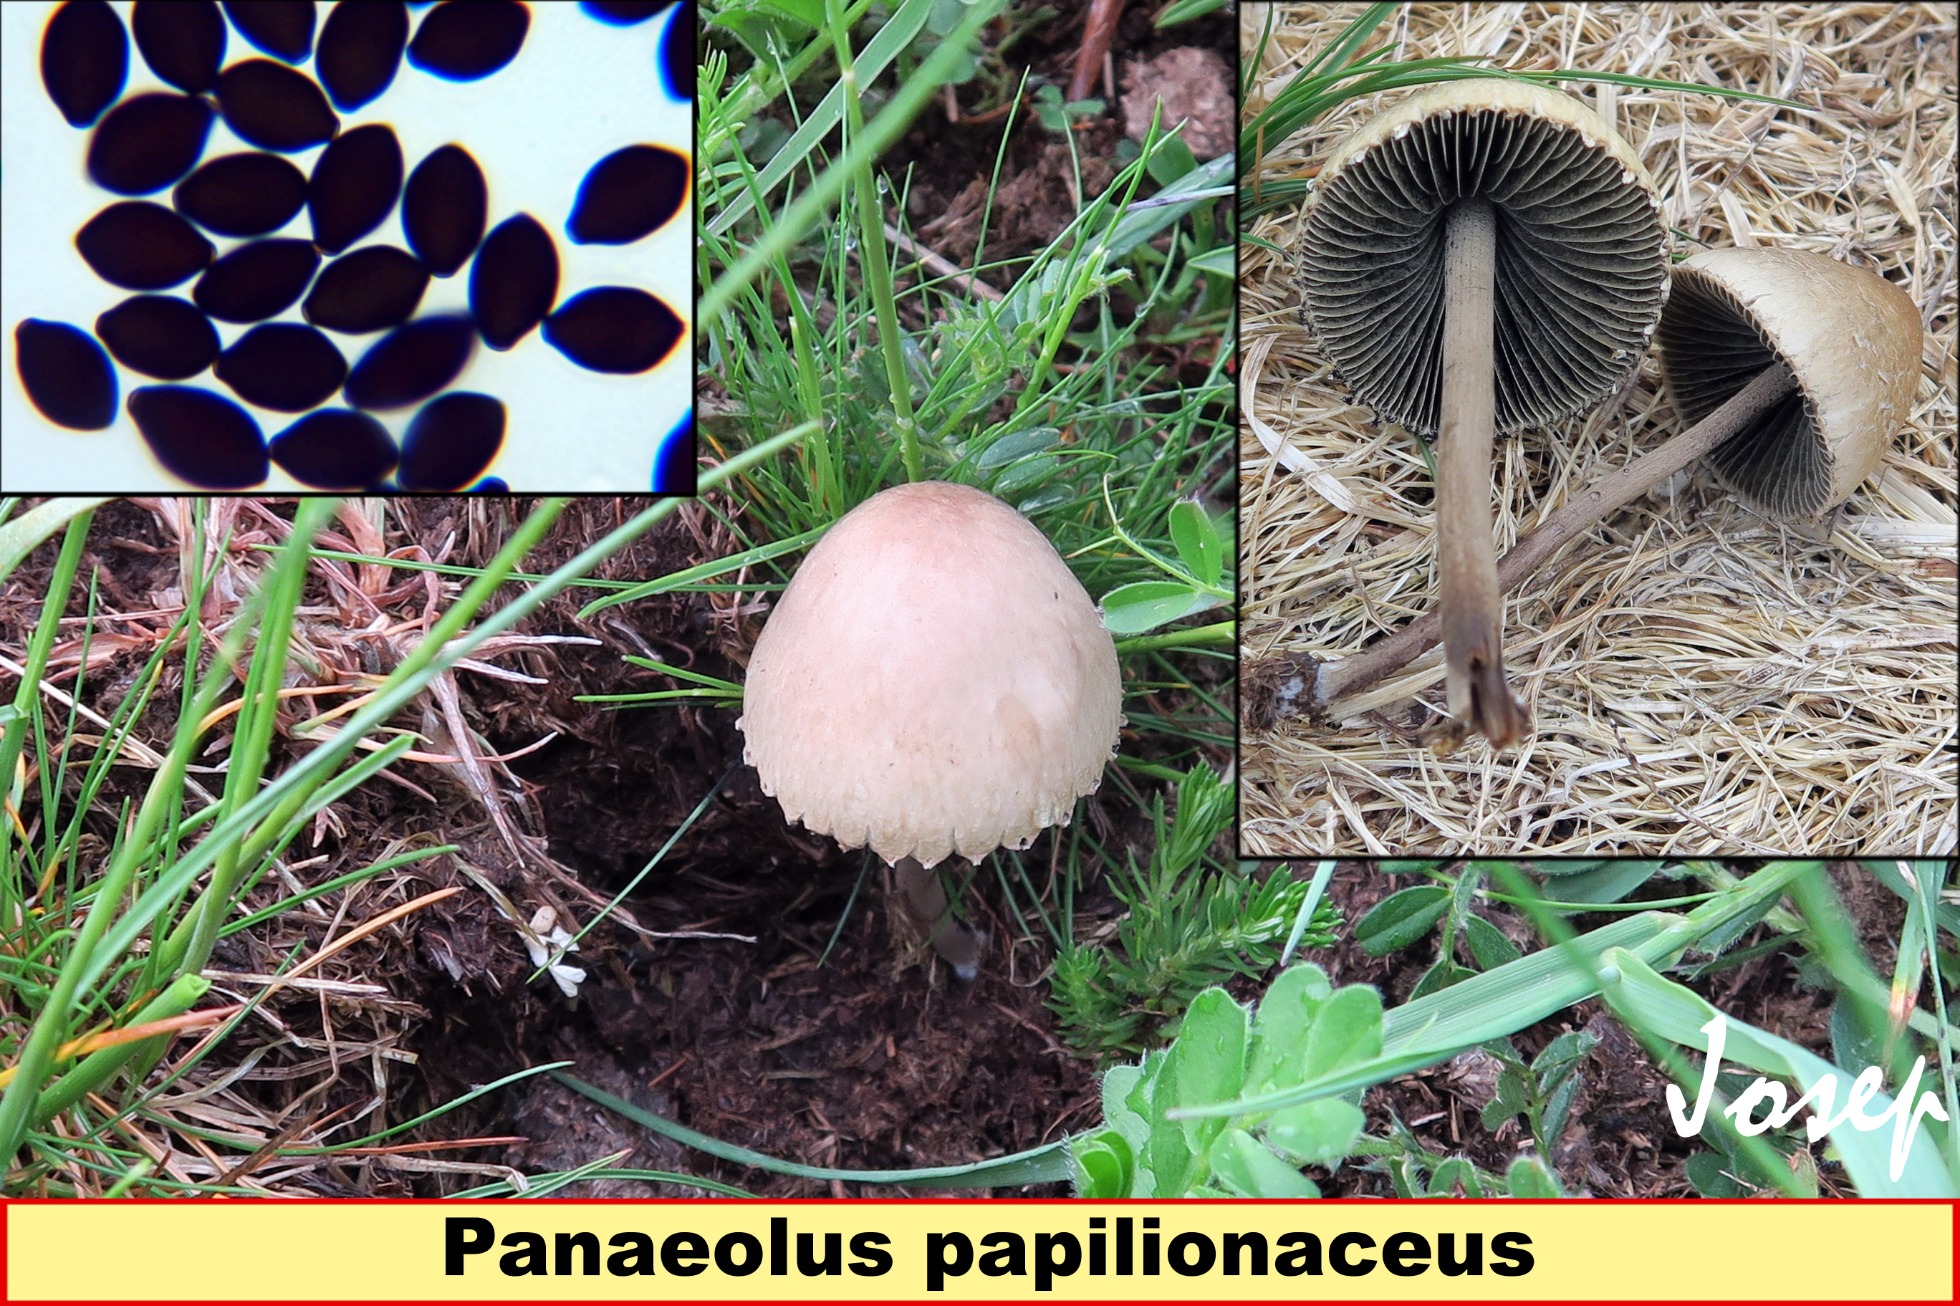 Panaeoluspapilionaceus_2019-01-31.jpg